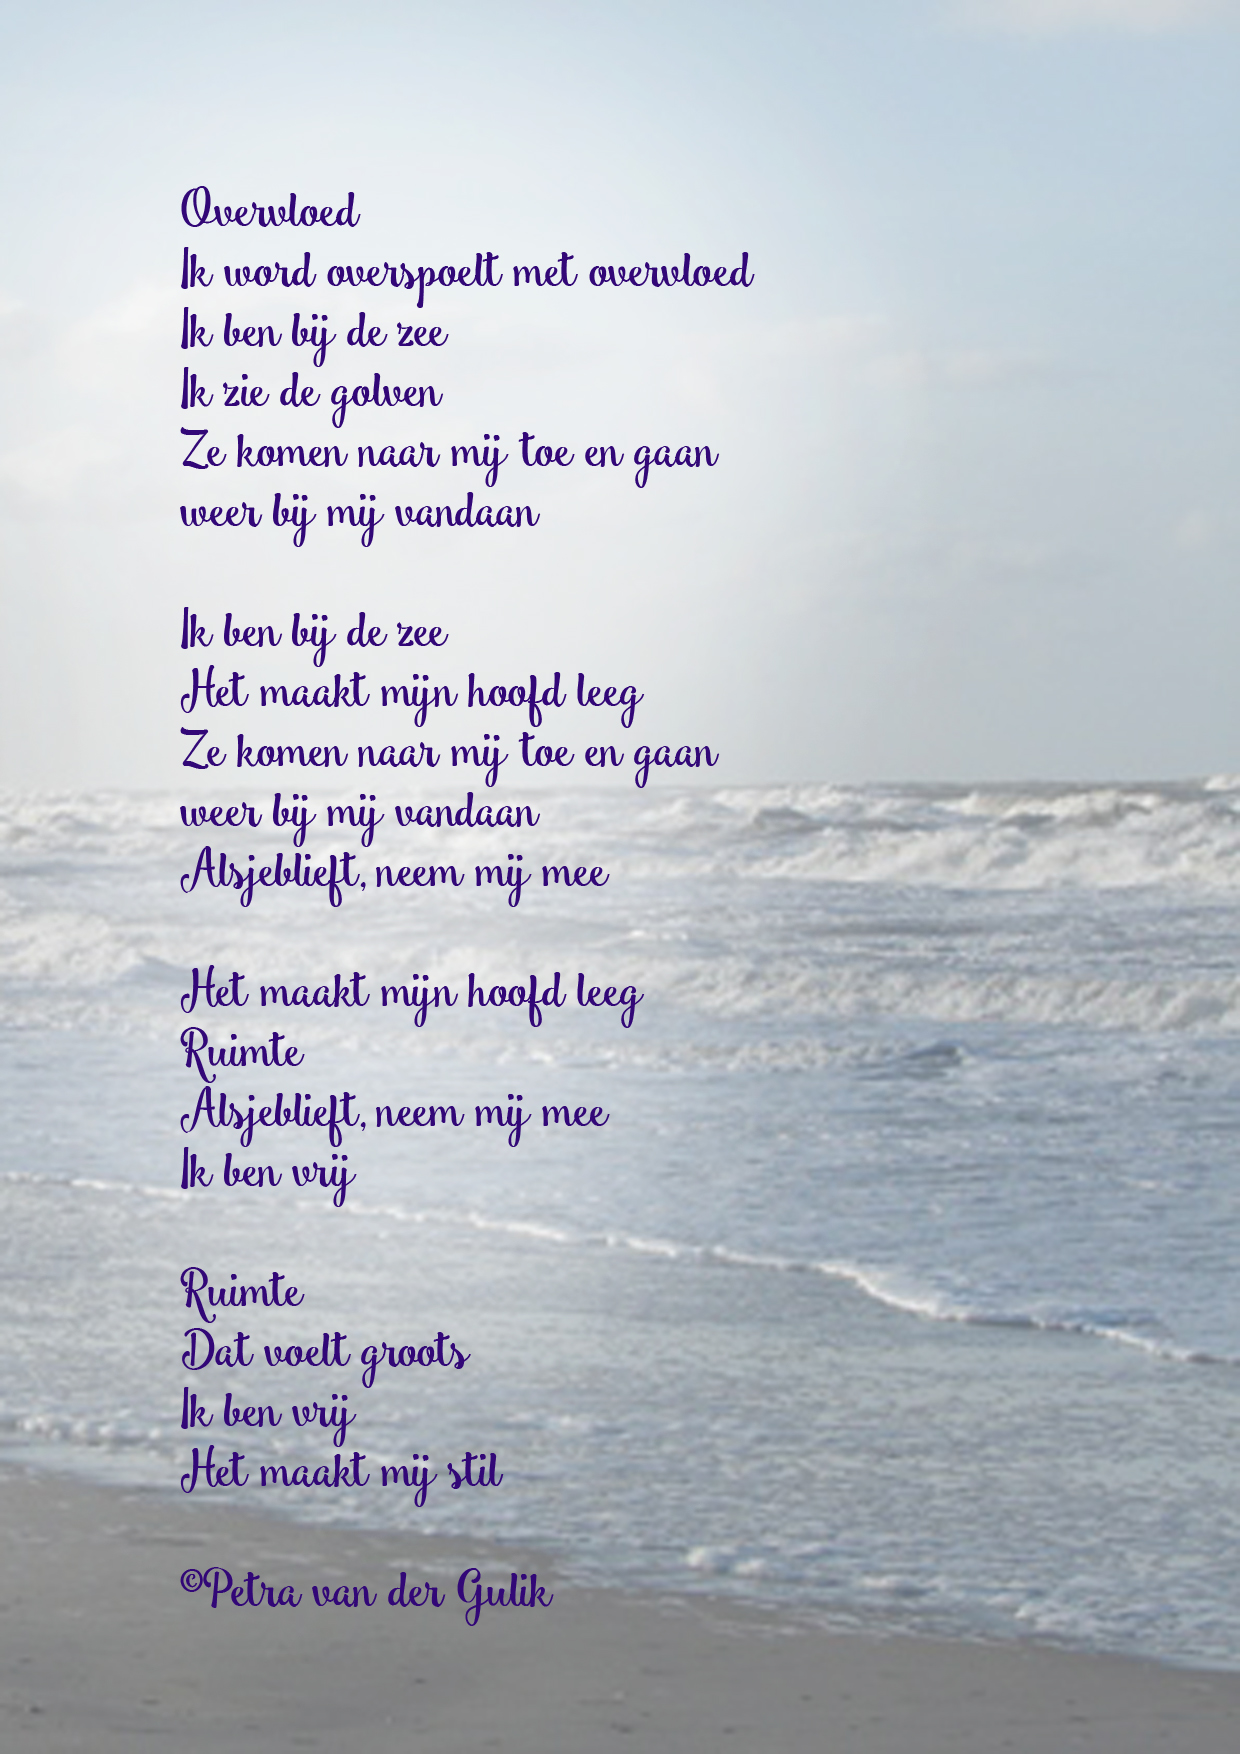 Super Gedicht: Overvloed - Petra van der Gulik Coaching OS-91